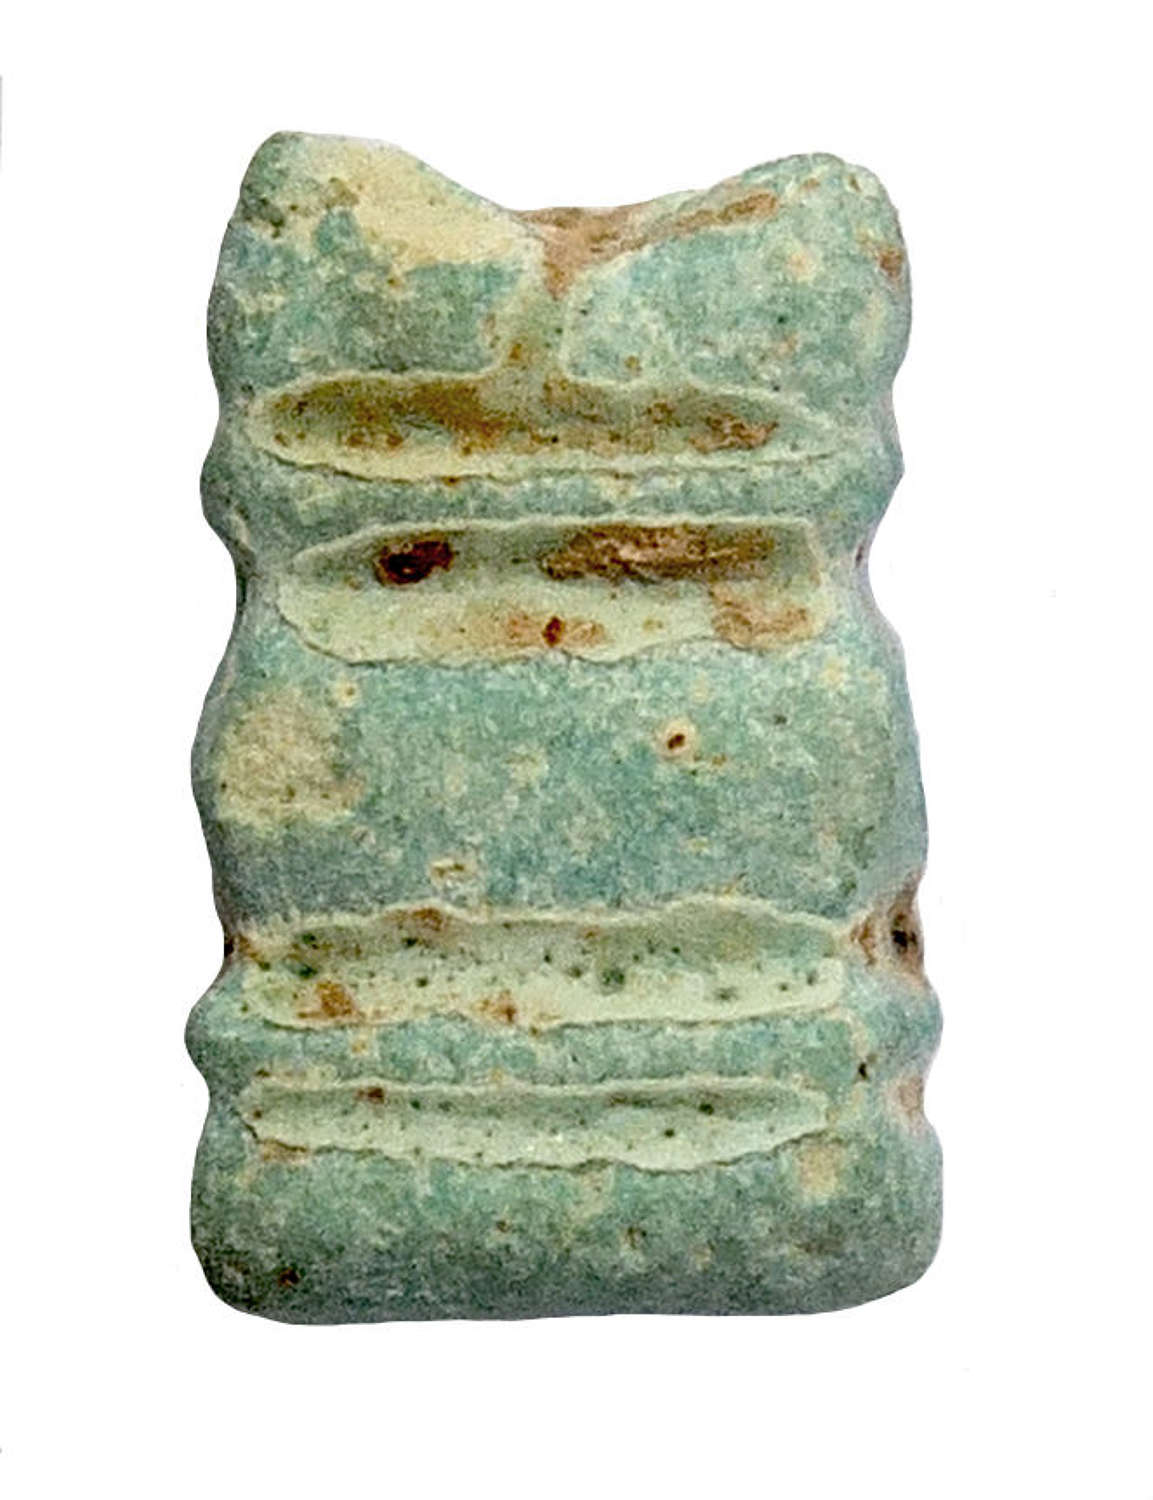 A small Egyptian faience altar amulet, c. 600 B.C. - 395 A.D.